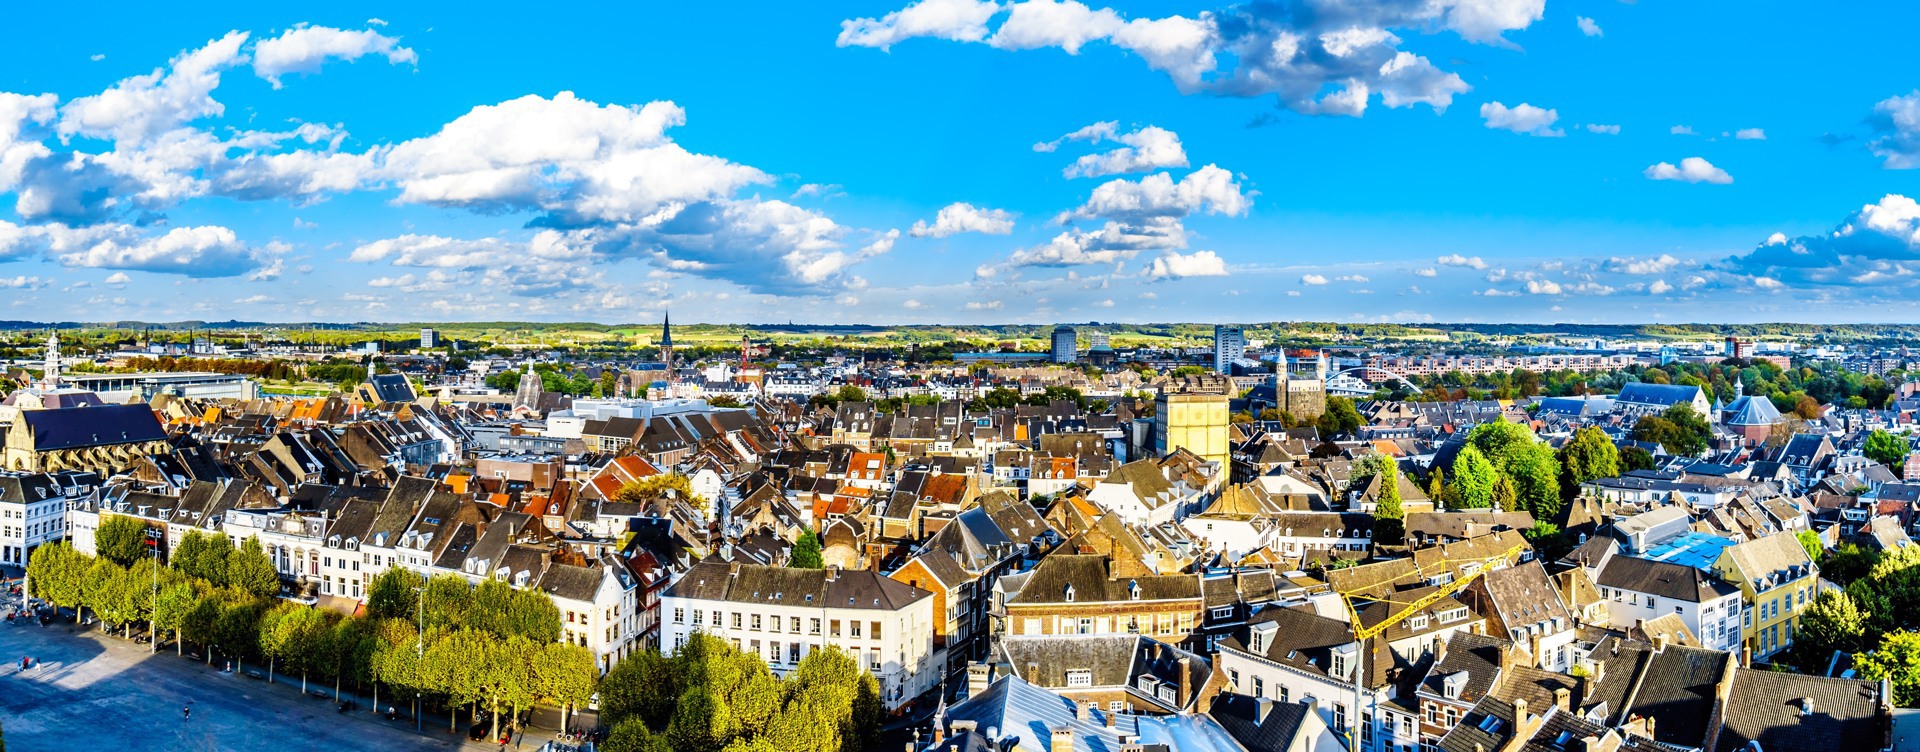 Besuchen Sie das historische 
Stadtzentrum von Maastricht